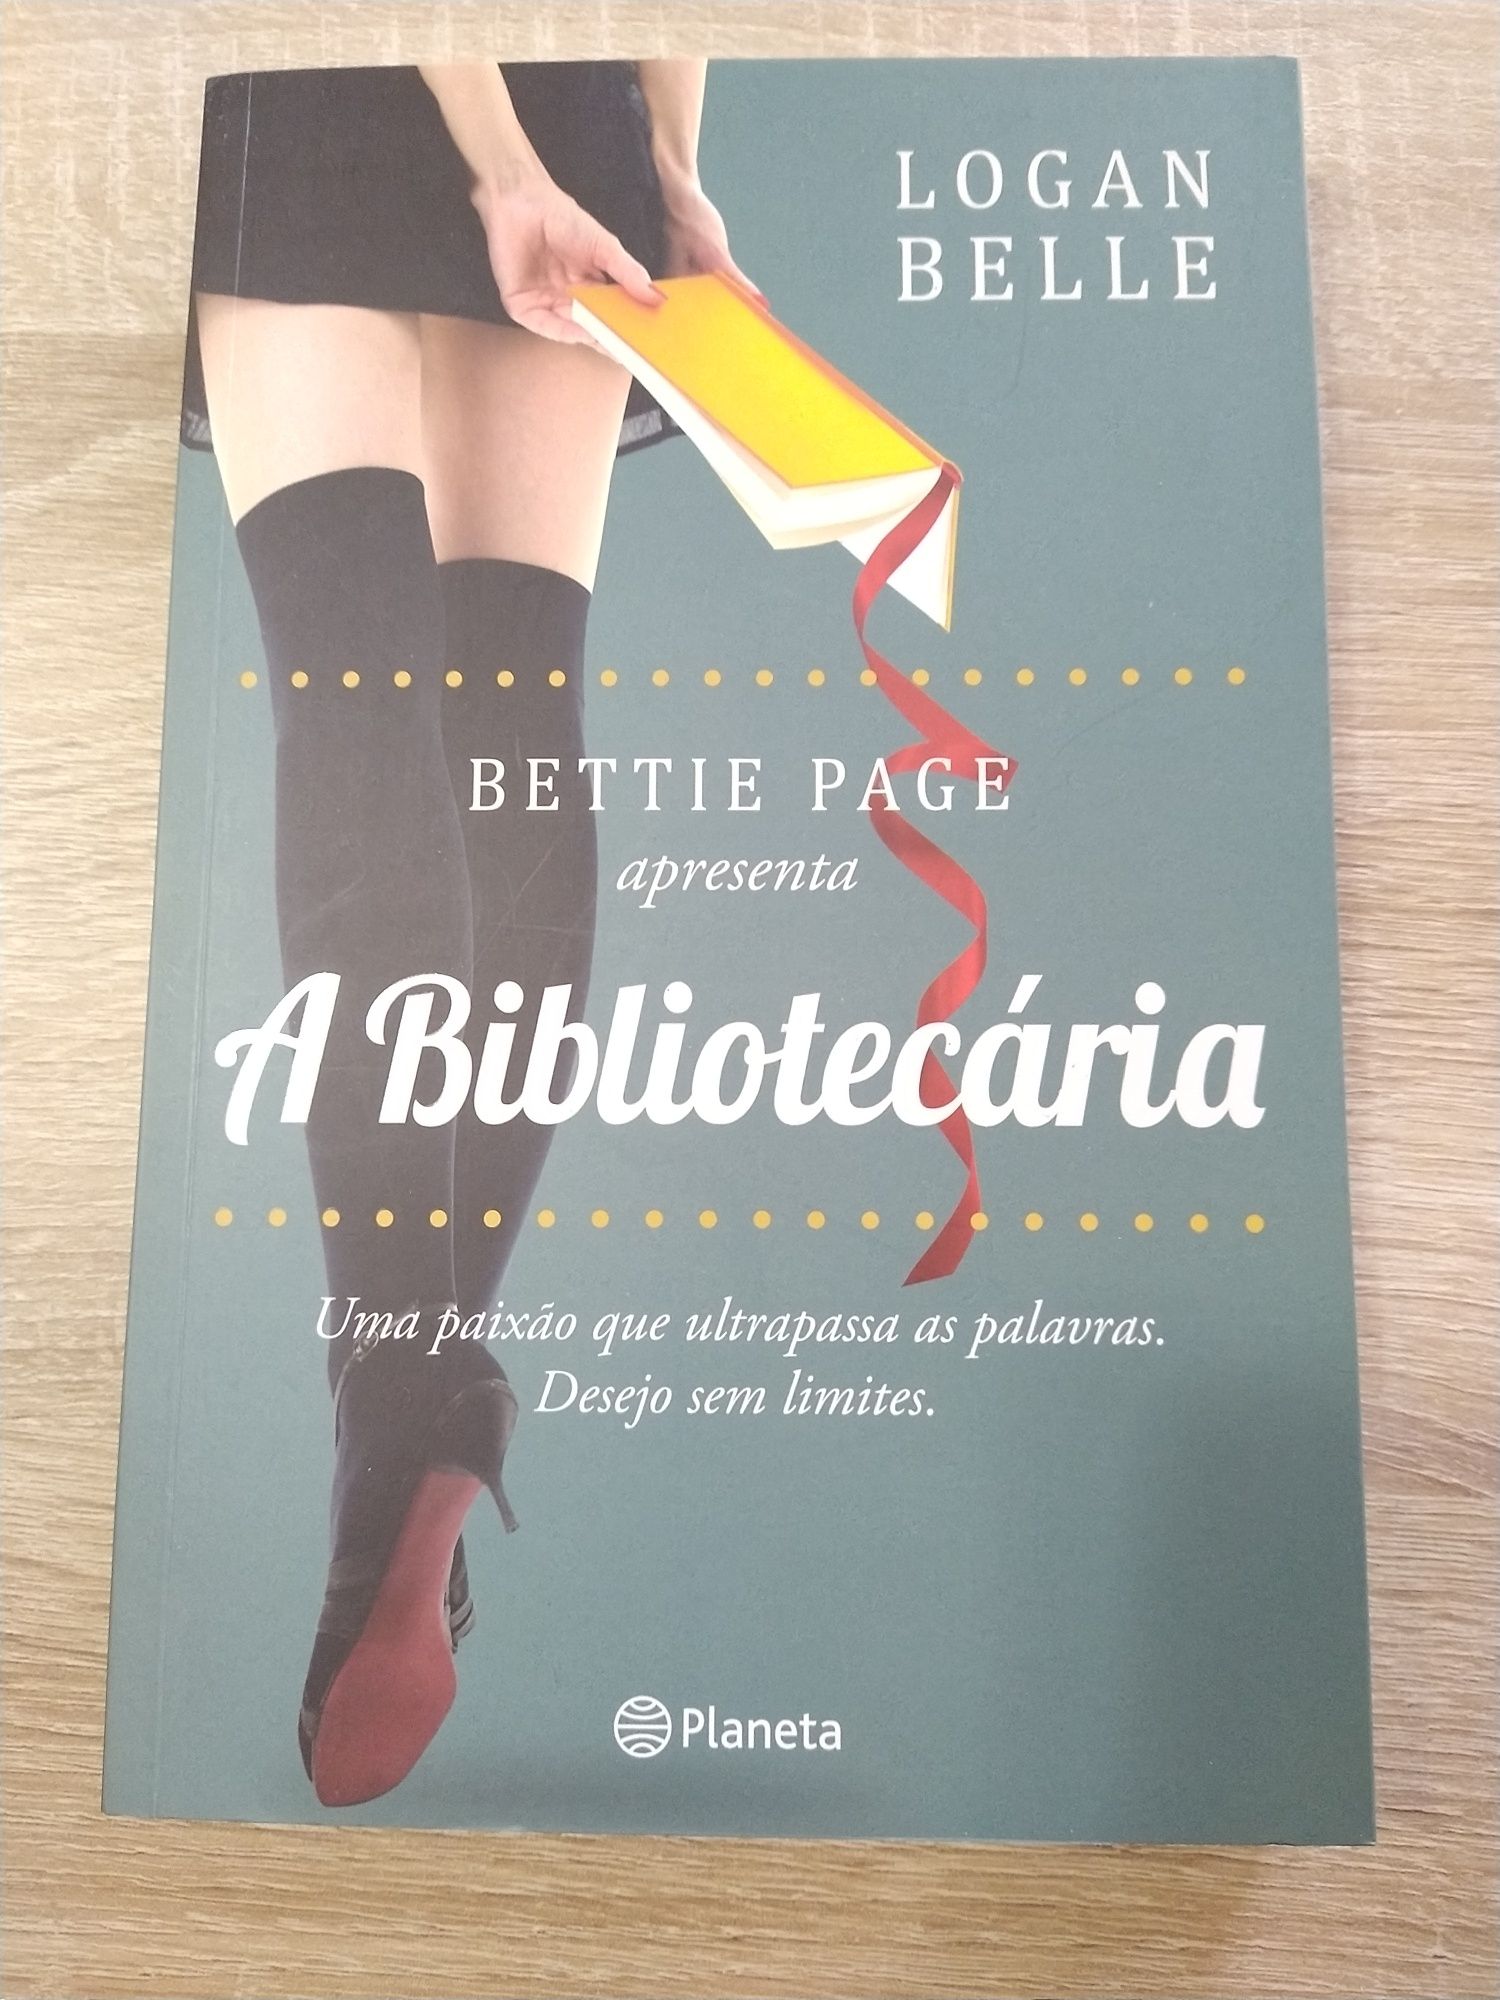 Livro "A bibliotecária" - Betie Page